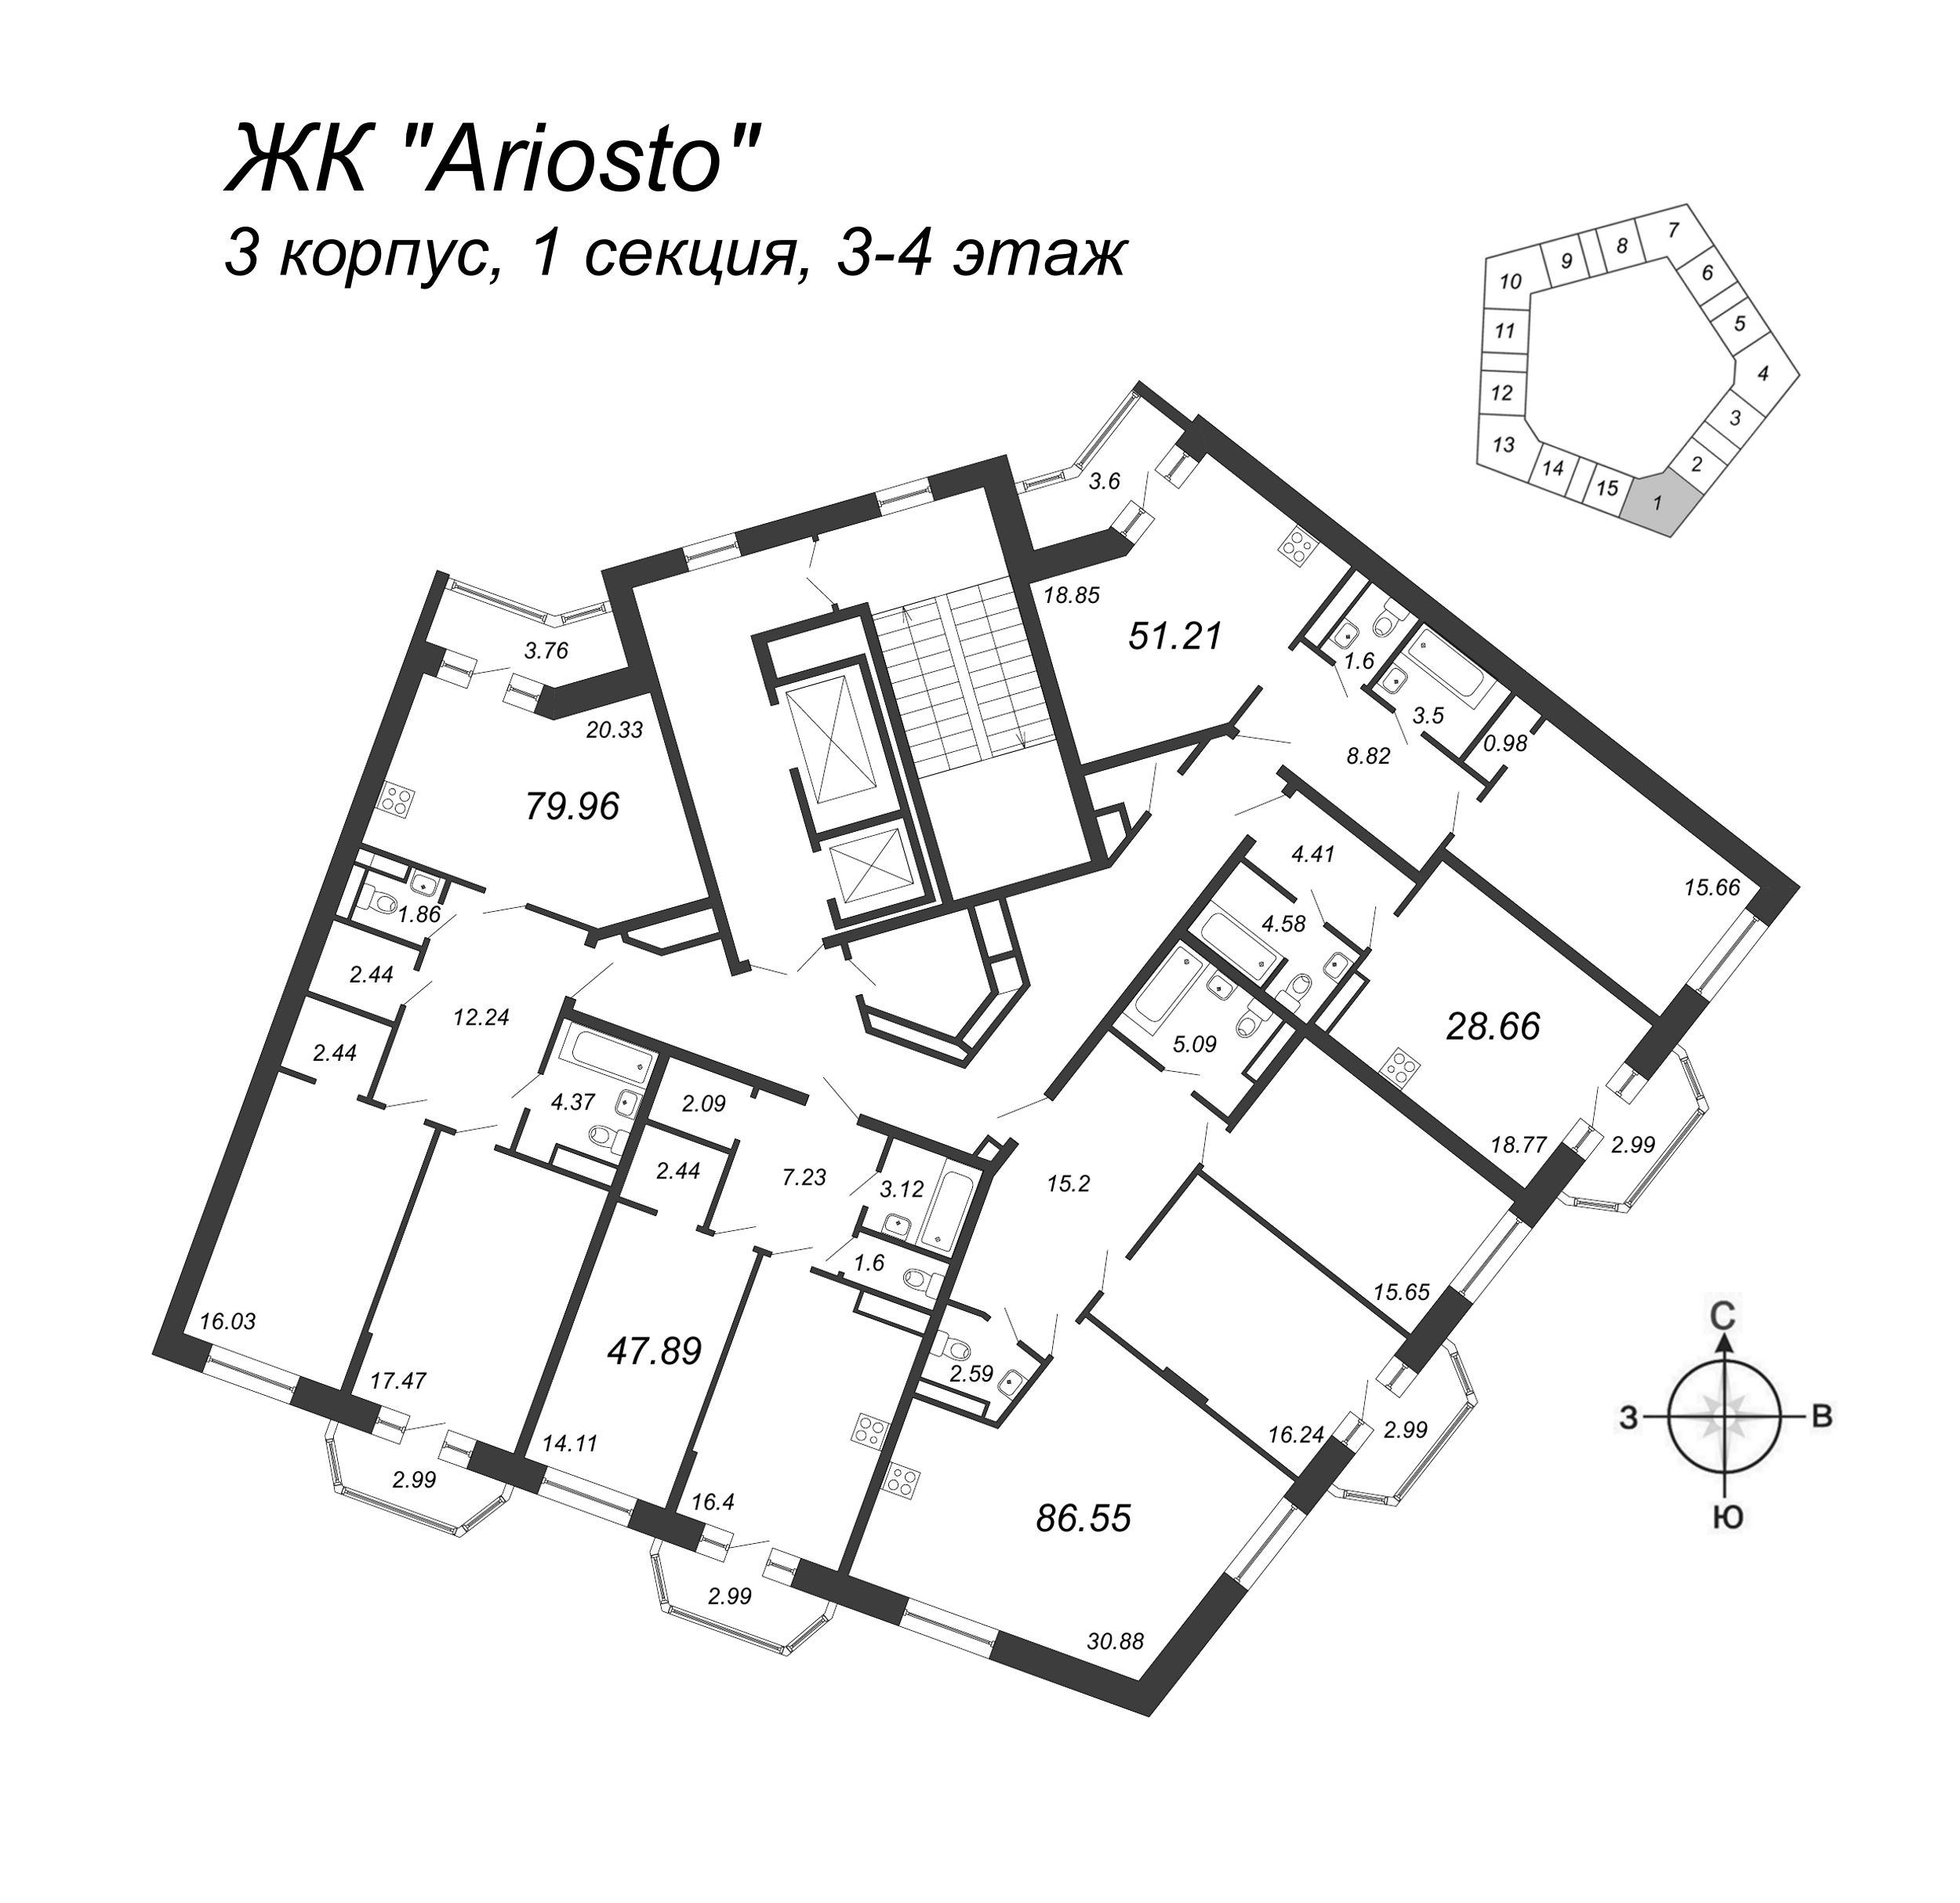 1-комнатная квартира, 47.89 м² в ЖК "Ariosto" - планировка этажа